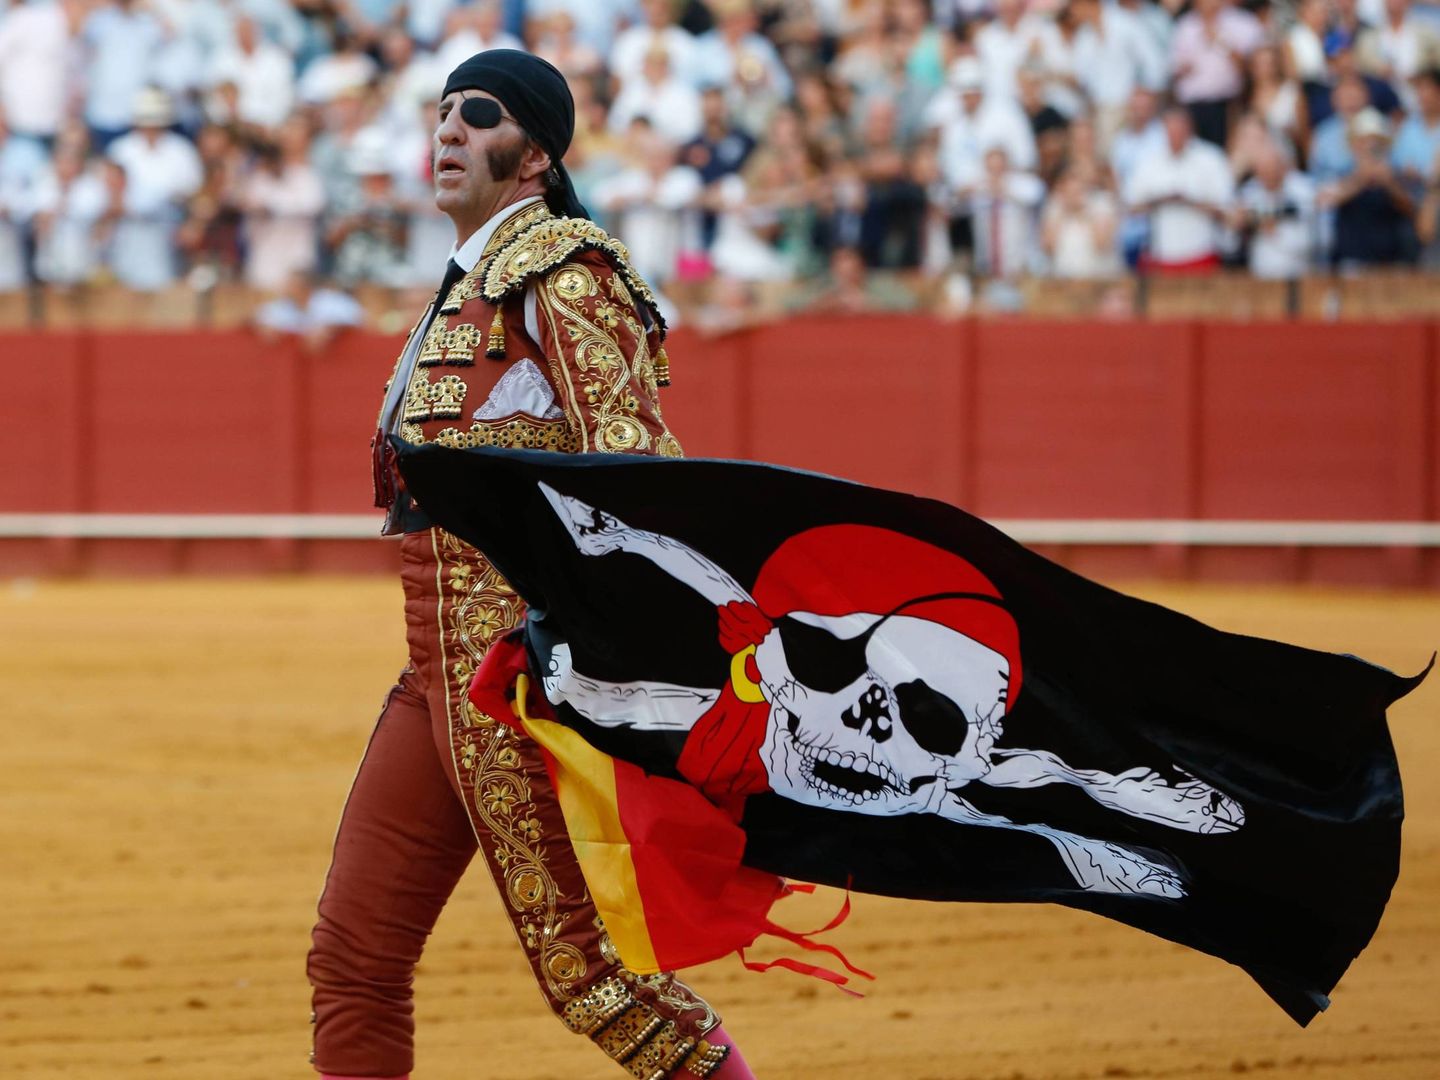 Padilla, luciendo la bandera pirata. (Cordon Press)